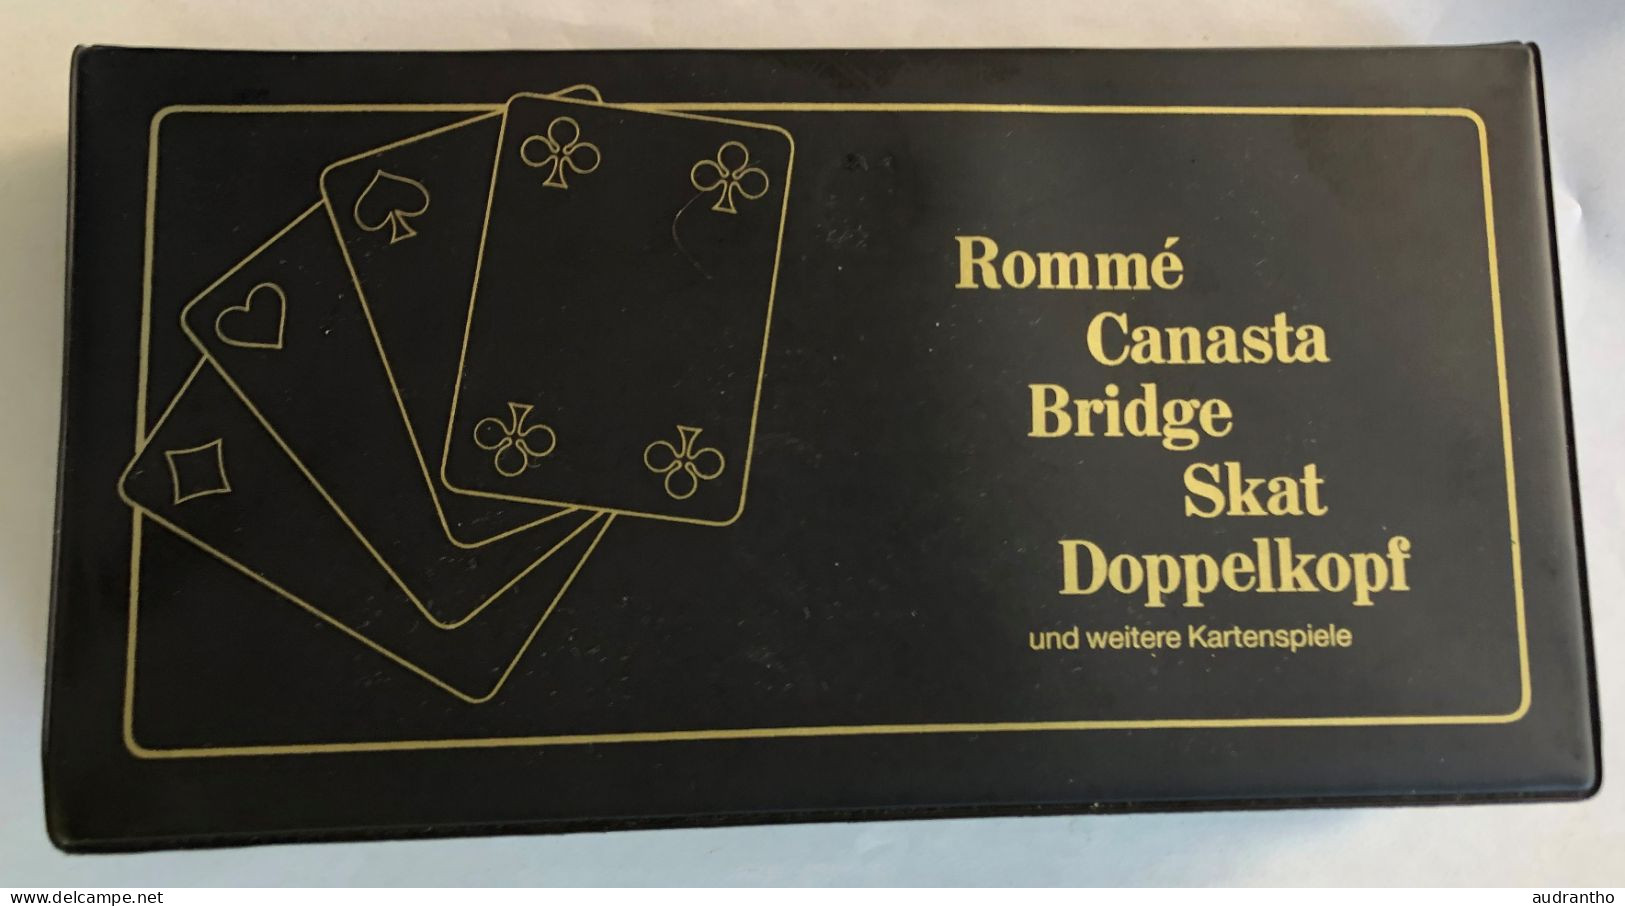 Coffret De 3 Jeux De Cartes Rommé Canasta Bridge Skat Doppelkopf - Kartenspiele - Berliner Spielkarten - 54 Cards